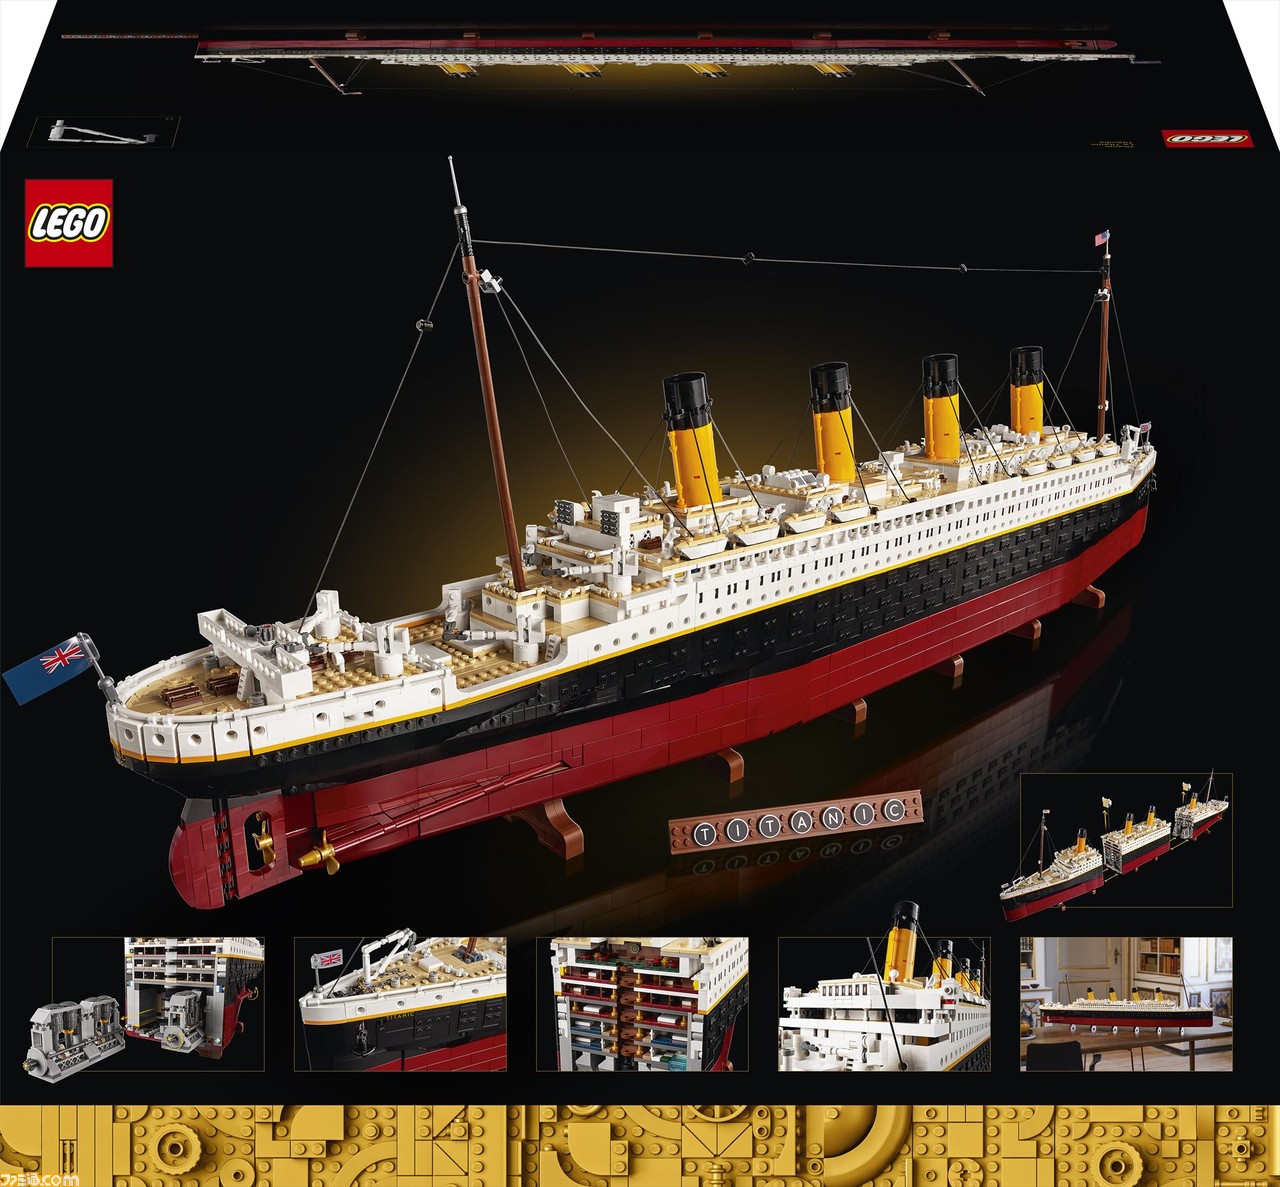 タイタニック号を1/200スケールで再現した“レゴ タイタニック号”が11月8日より販売。全長1.3mを超えるレゴ史上最長・最大級のモデル